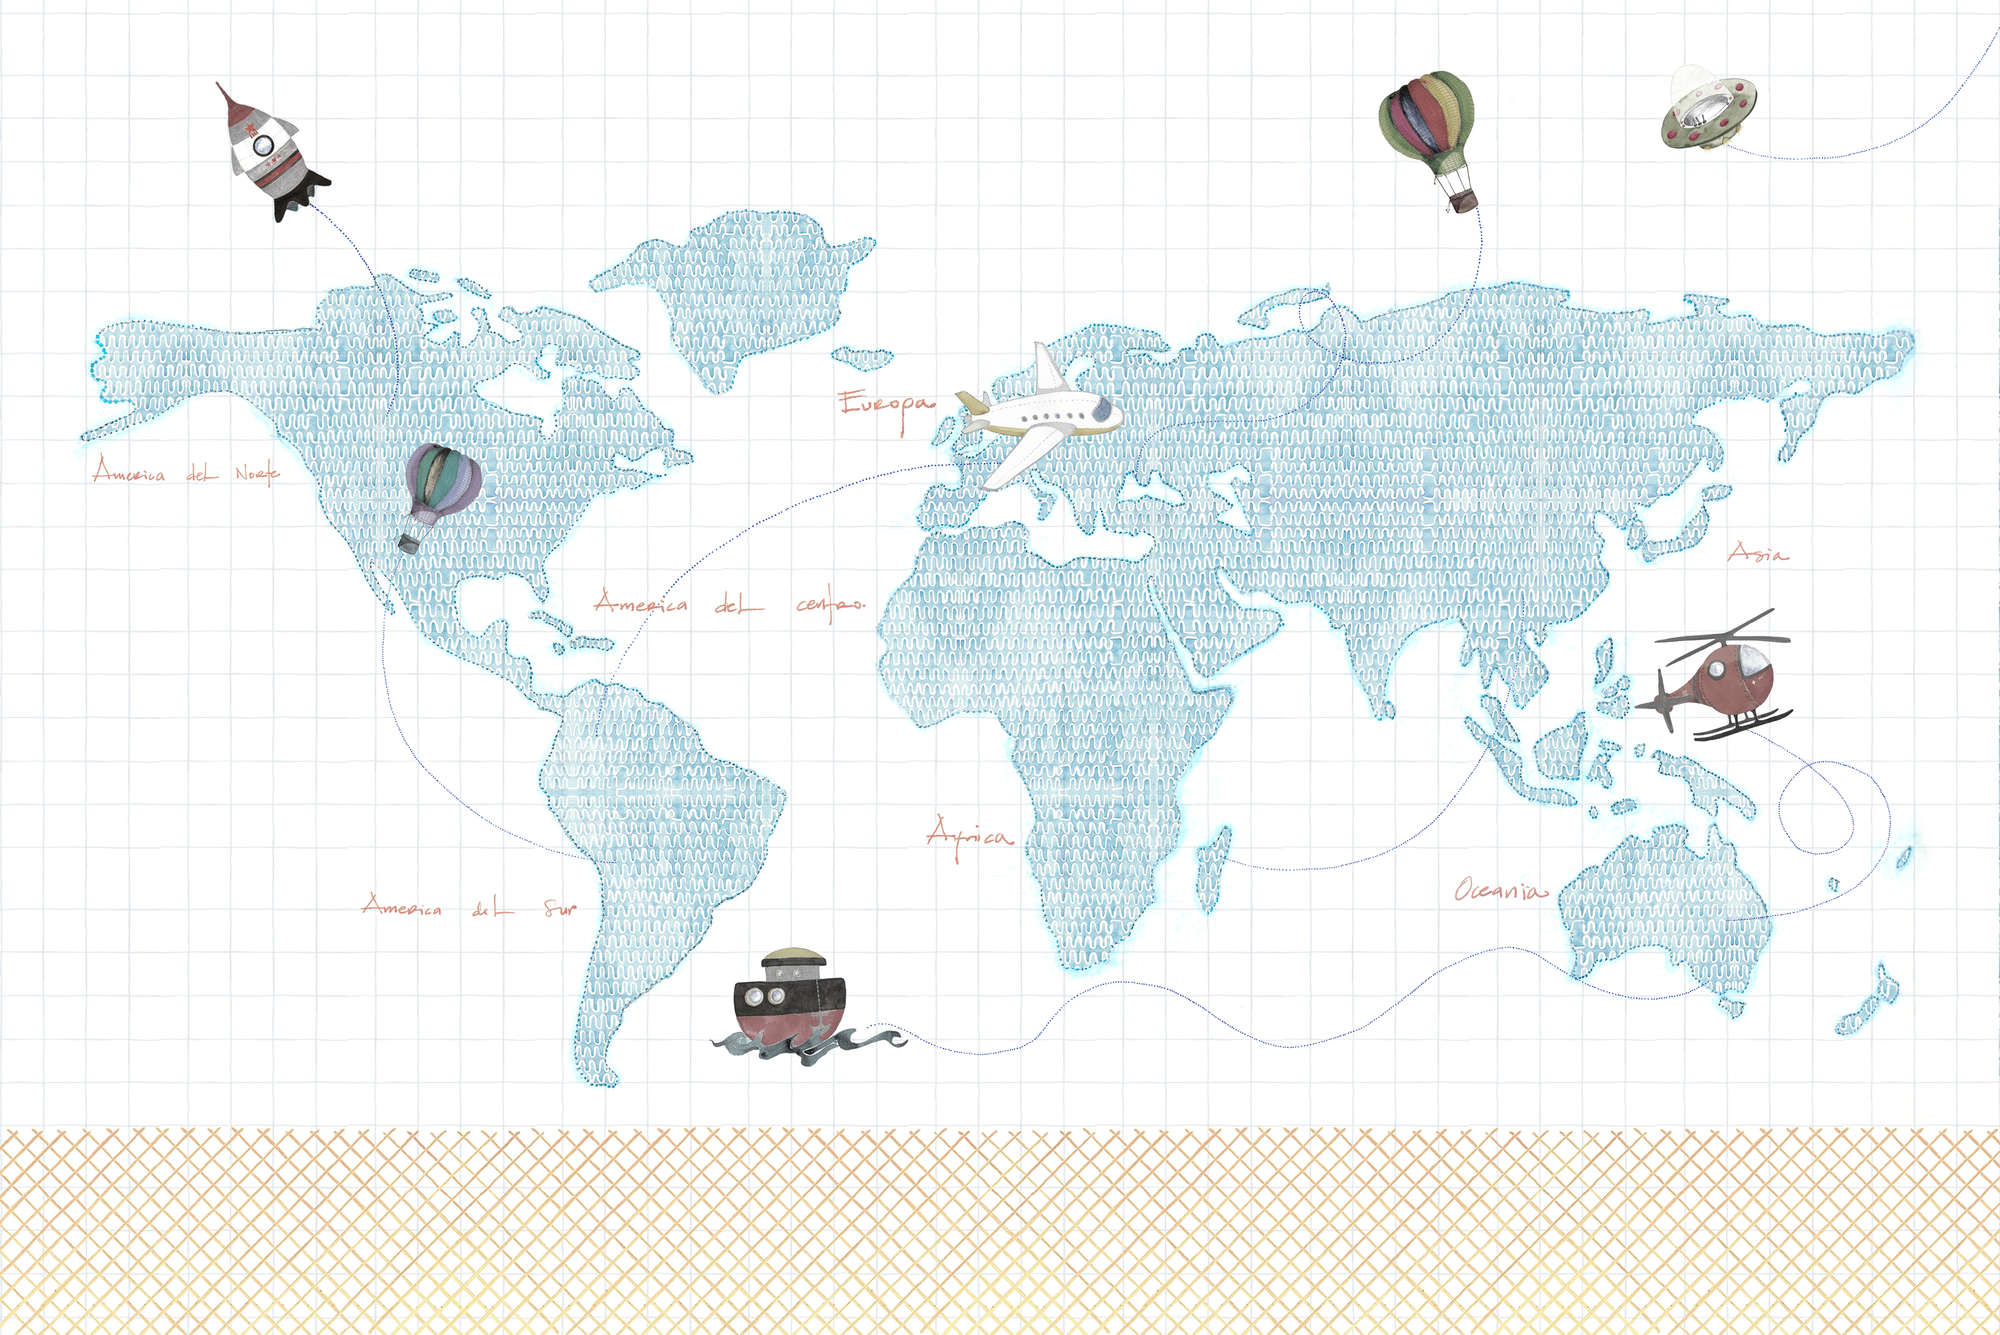             Papel Pintado Infantil Mapa del Mundo Dibujo en Tela No Tejida Mate
        